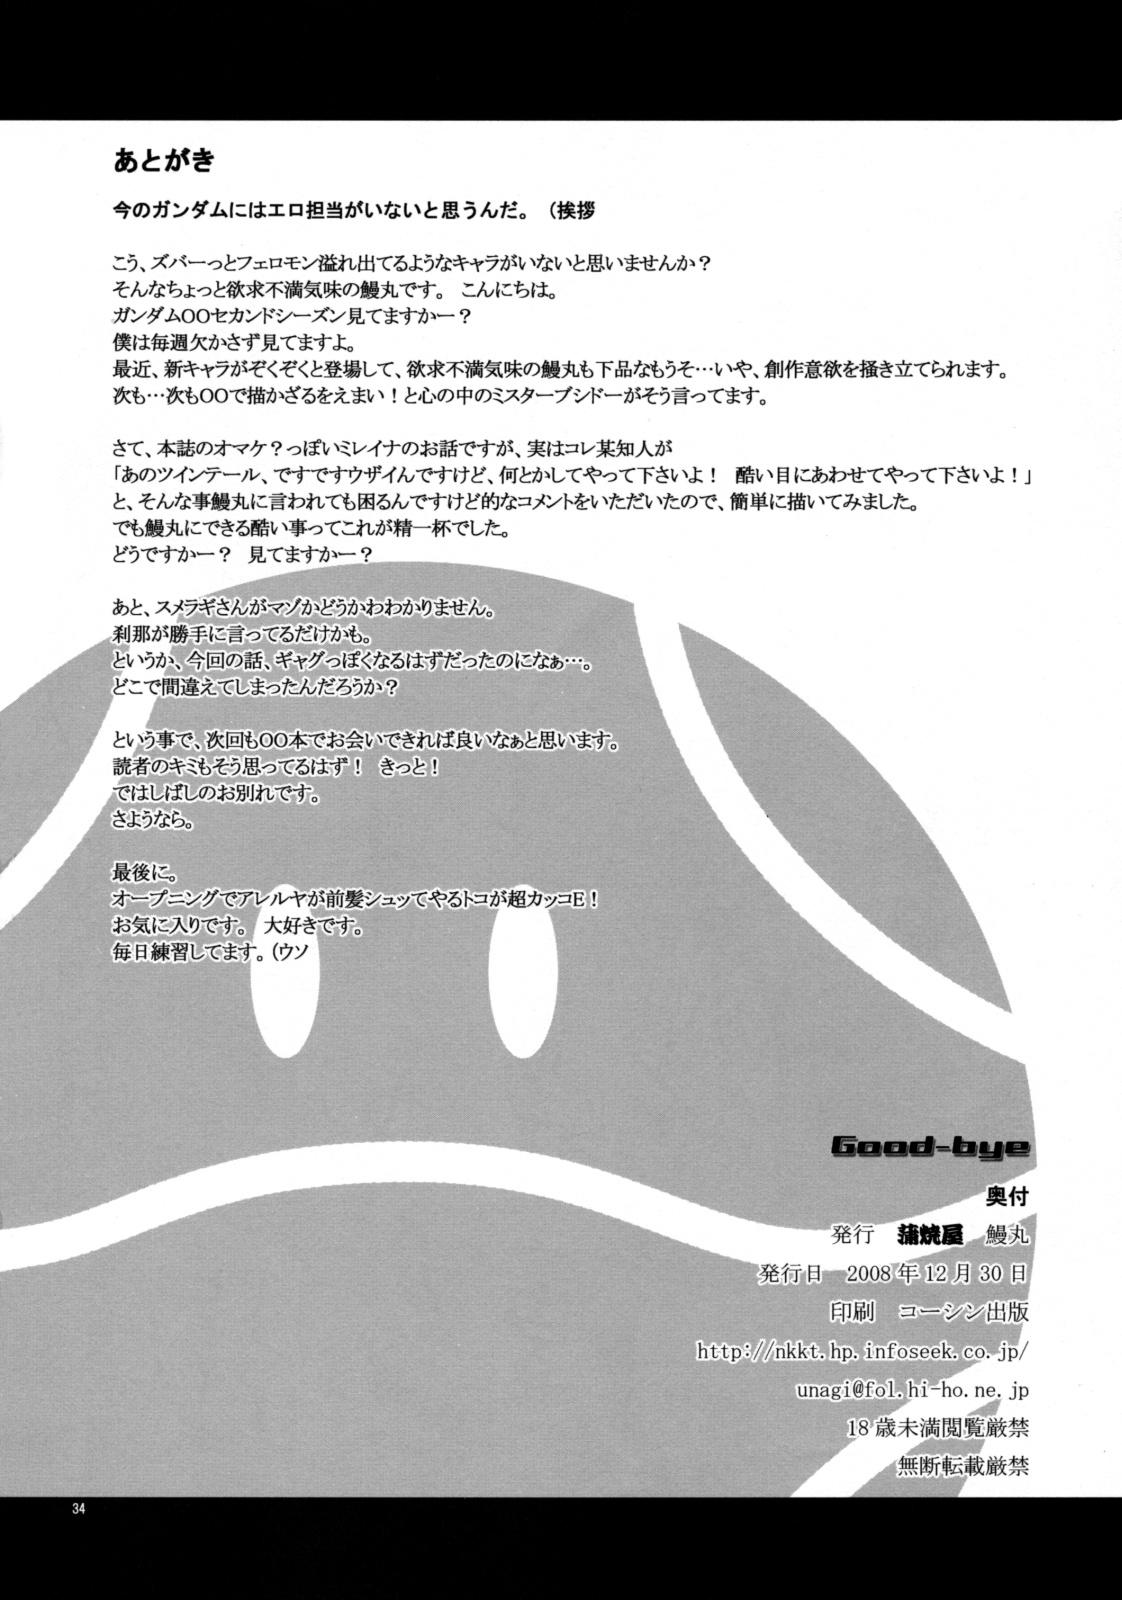 Free Blow Job Good-bye - Gundam 00 8teen - Page 34